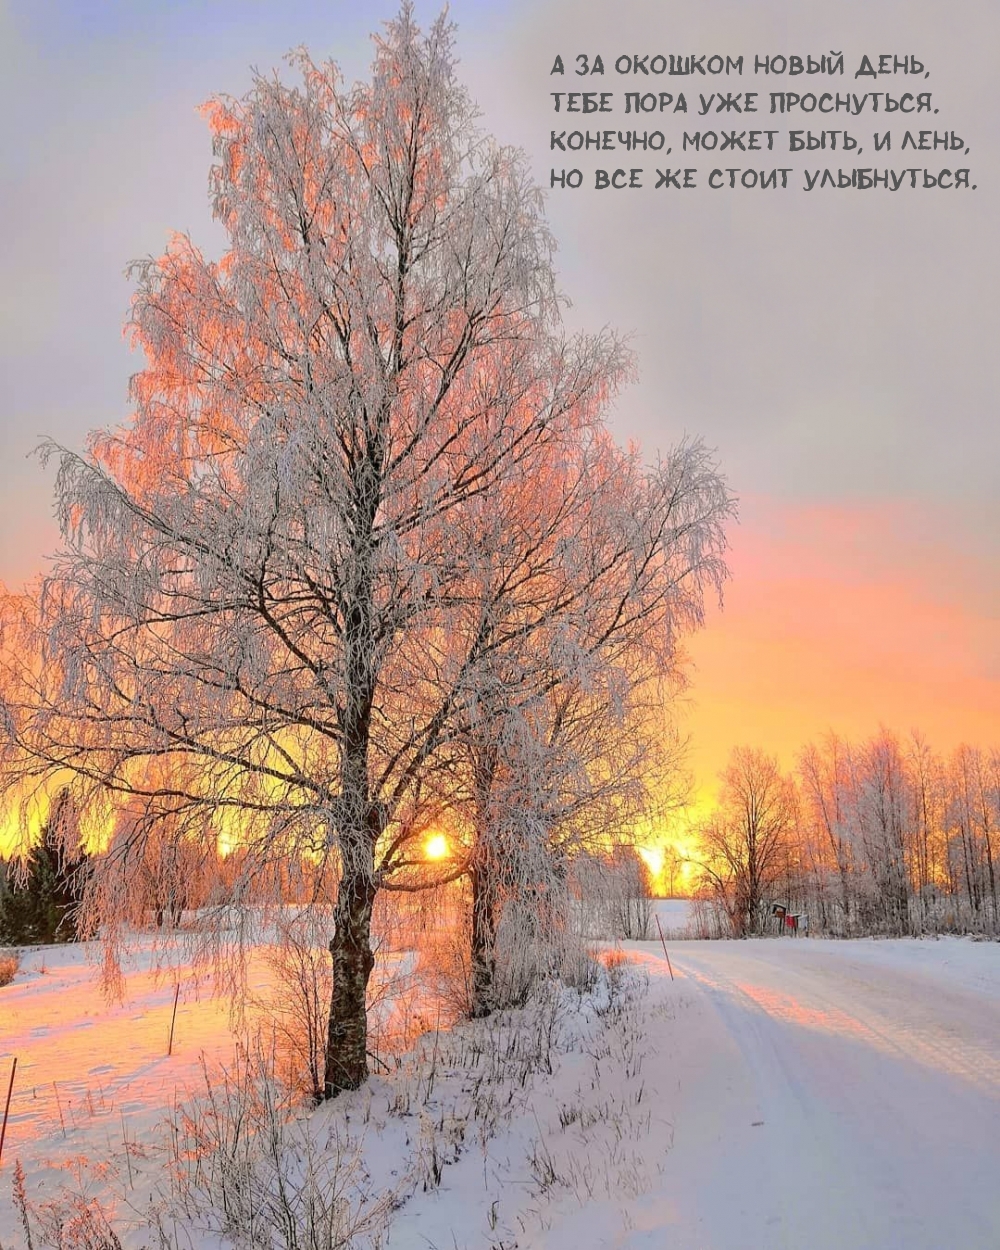 Великолепная открытка доброго утра зимнего